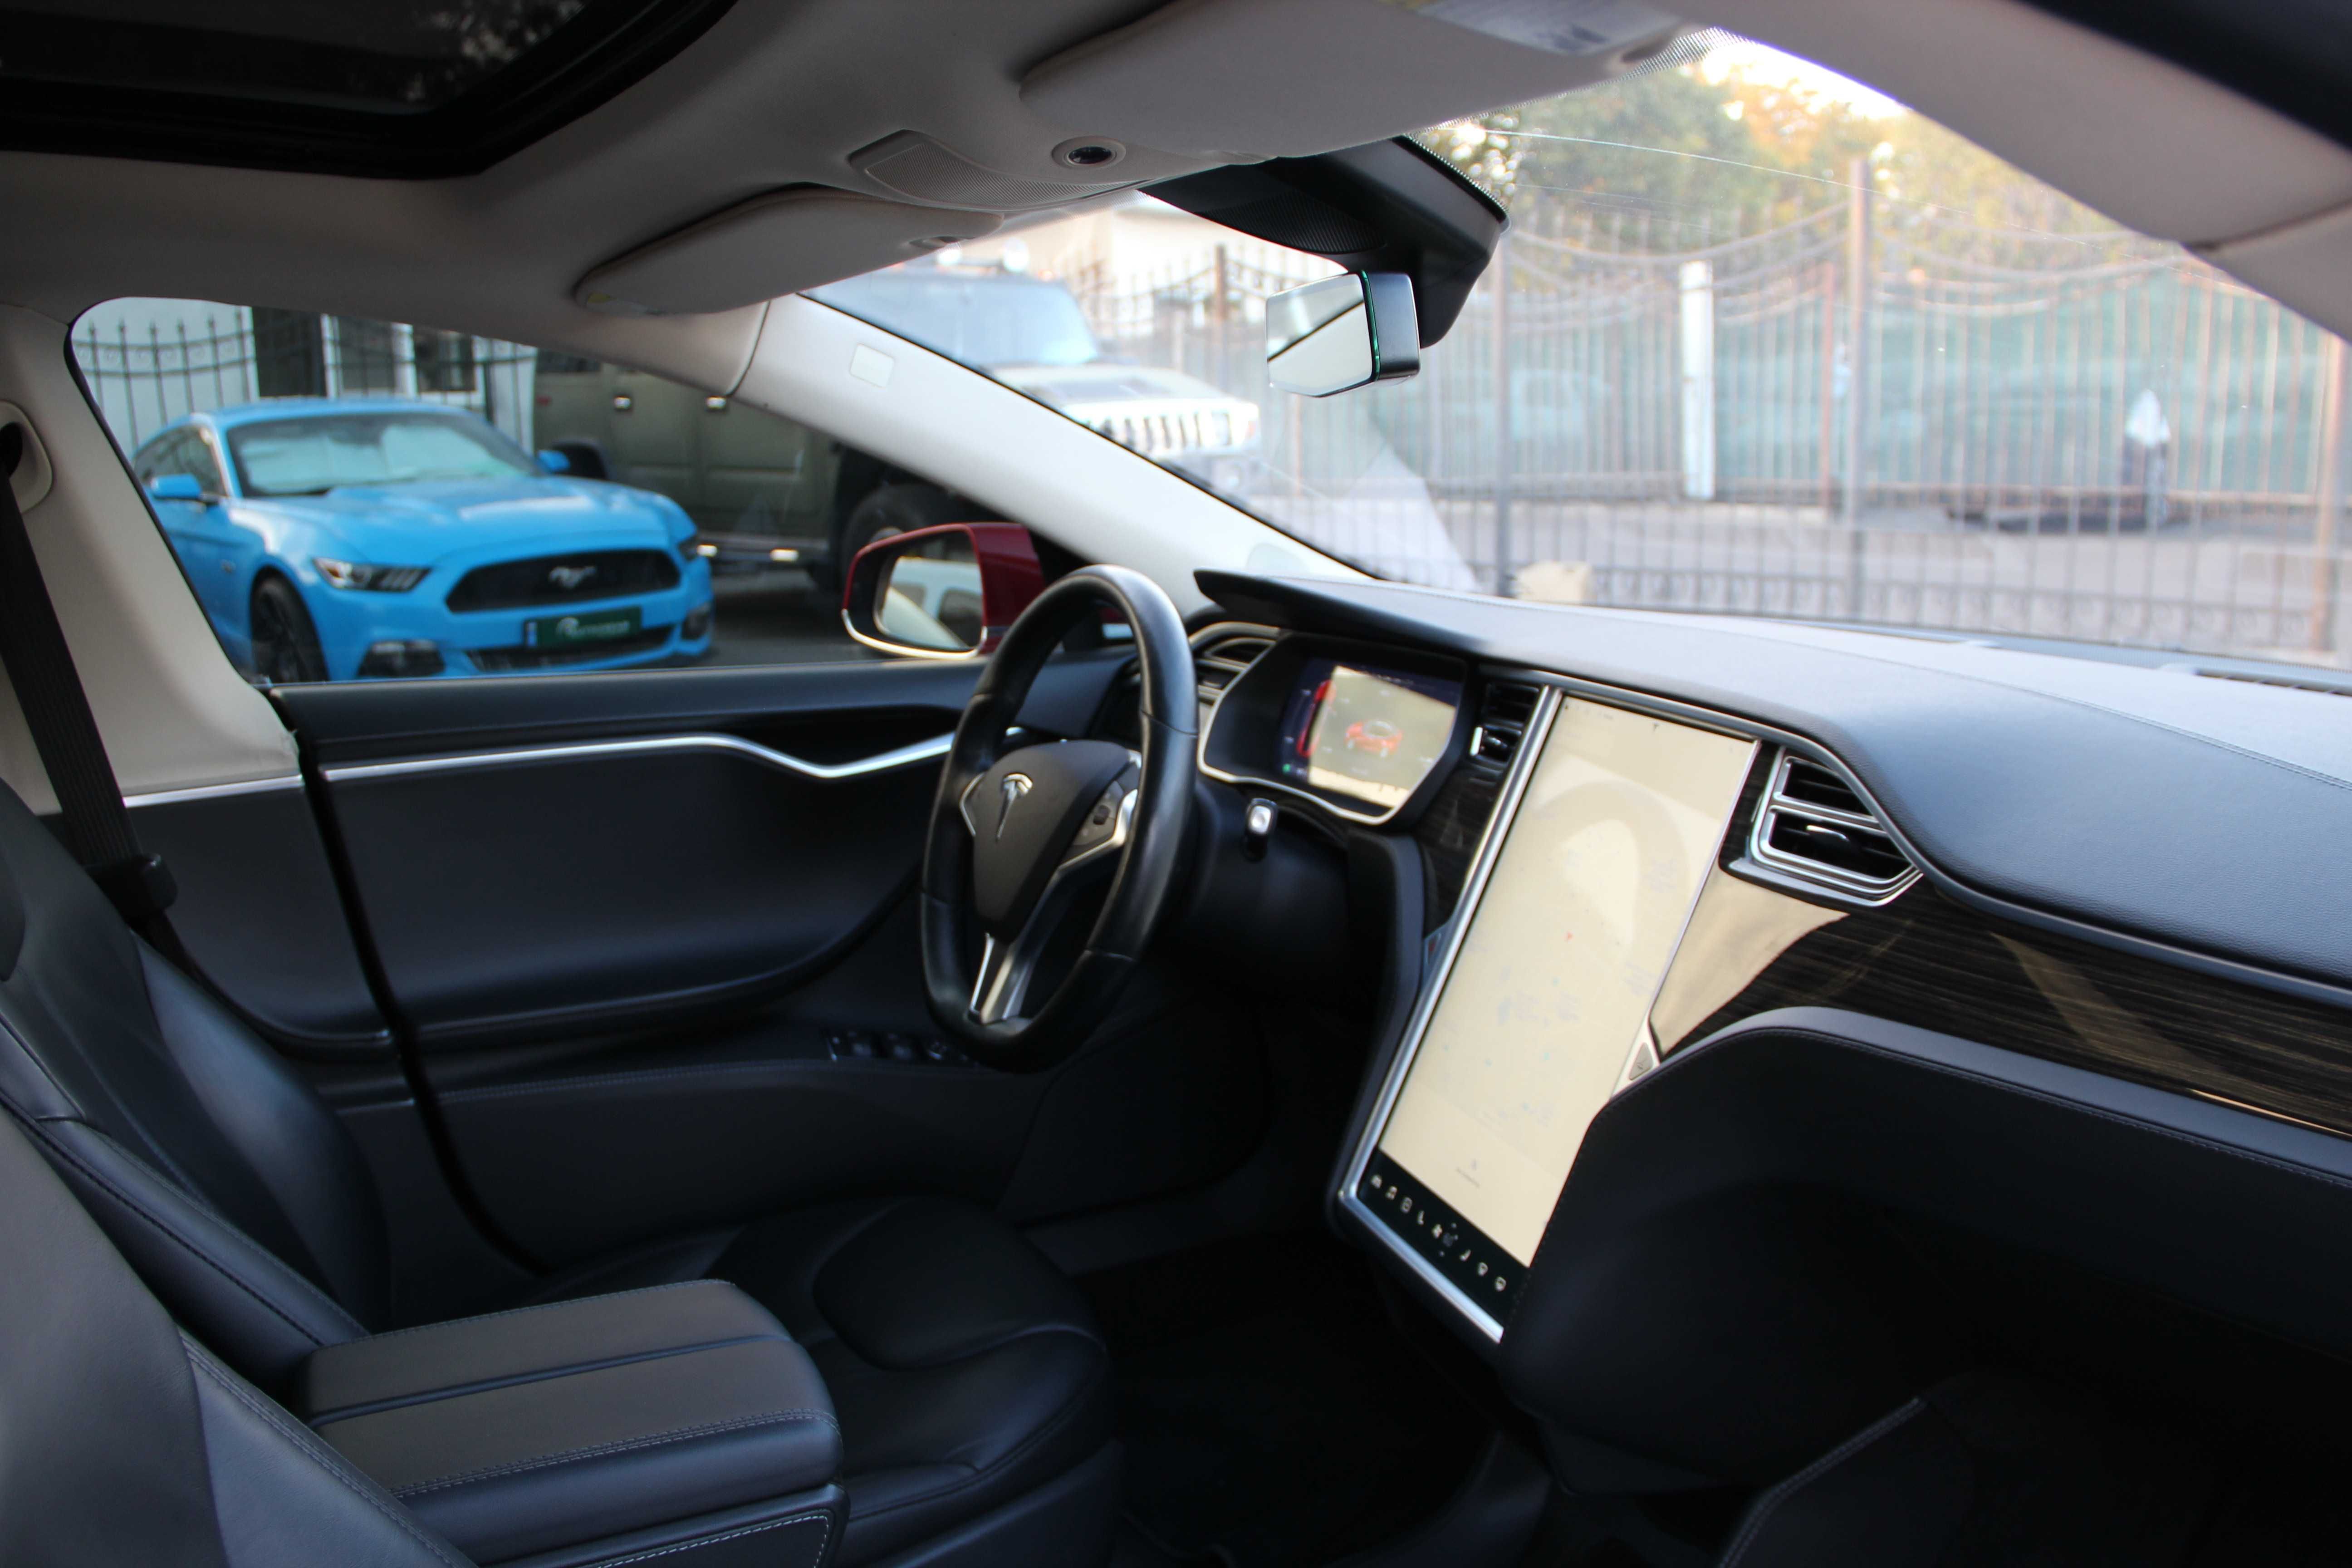 Tesla Model S 85 D, полный привод, 85 кВт, 2015 год, Тесла Модел С 85